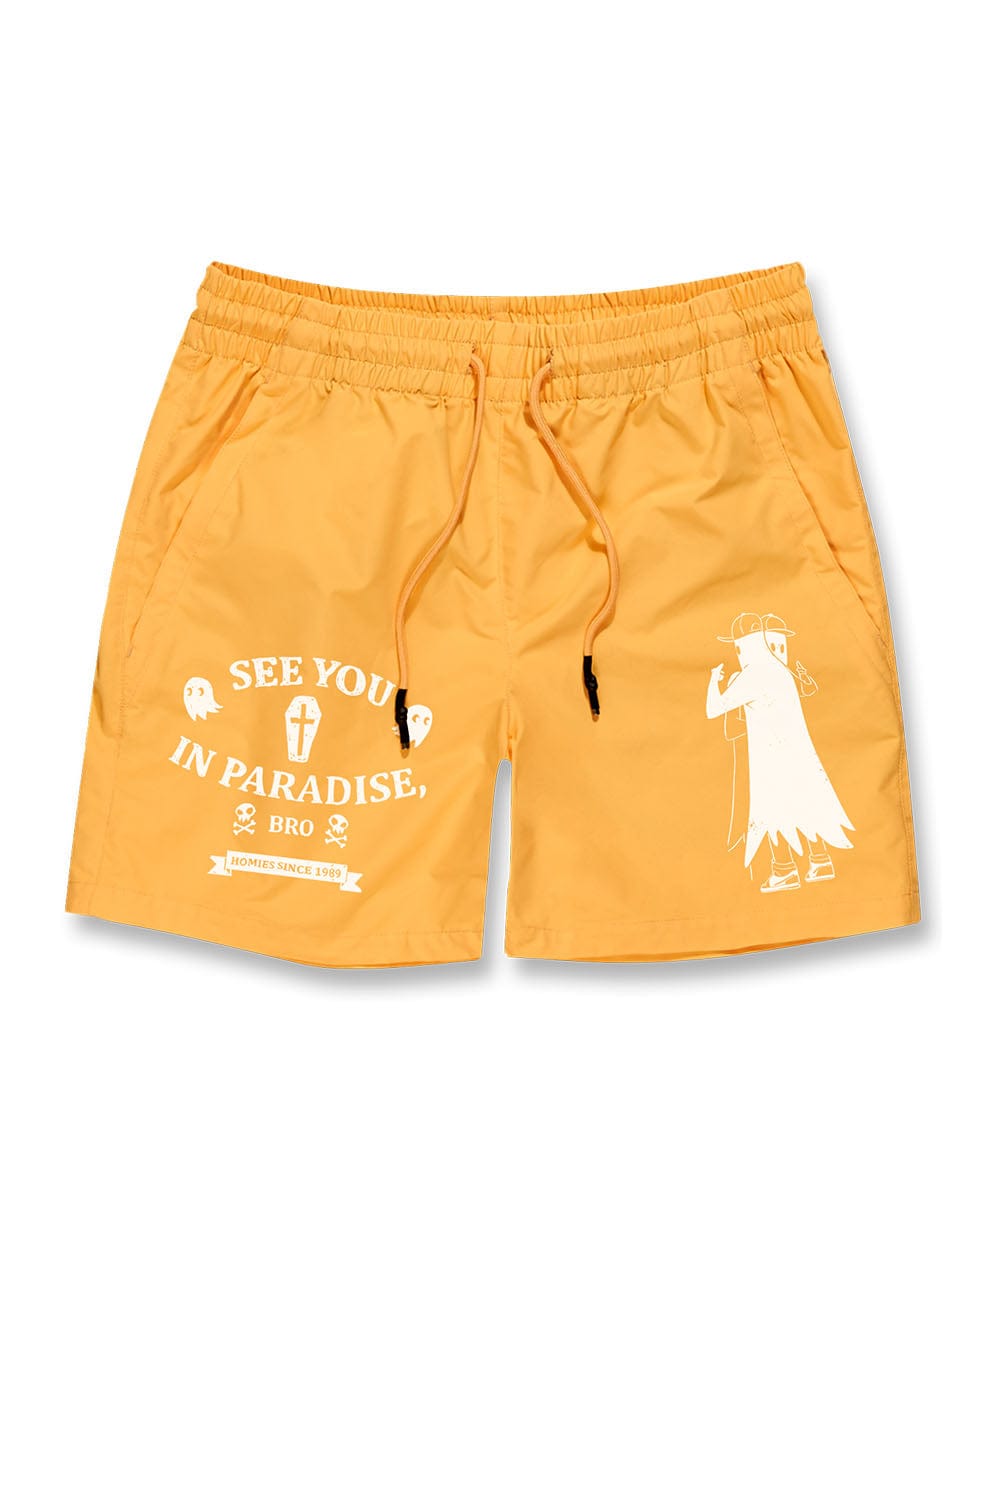 Jordan Craig Athletic - SYIP Shorts (Matte Orange) M / Matte Orange